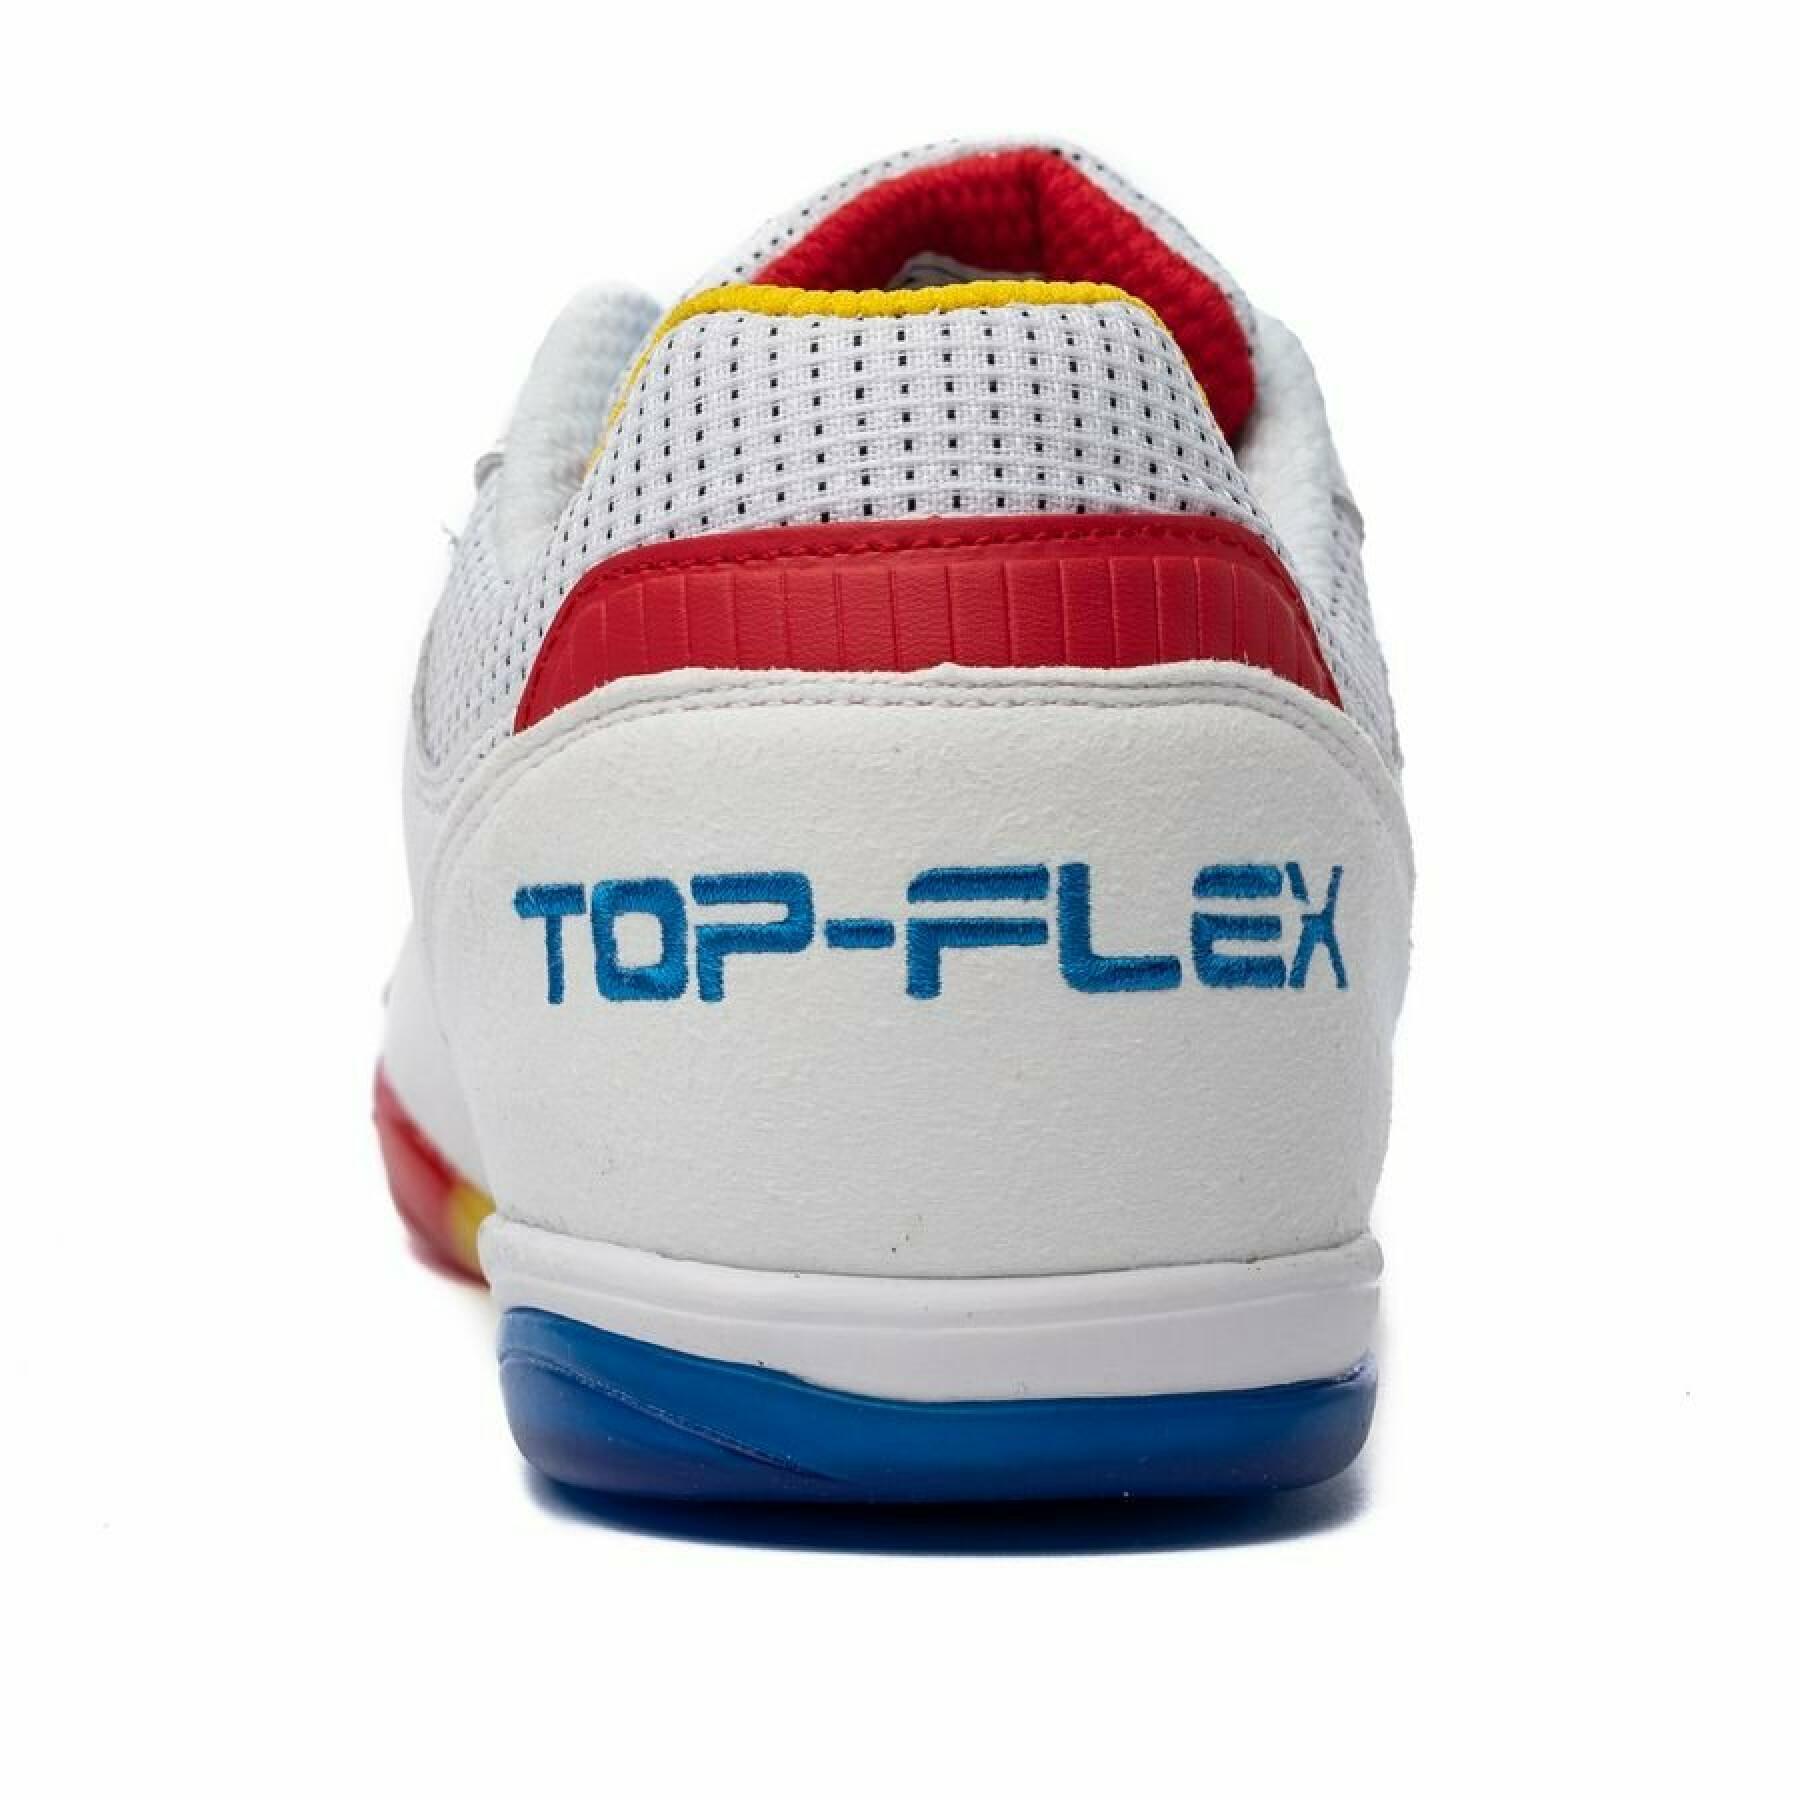 Schuhe Joma Top Flex Indoor 2016